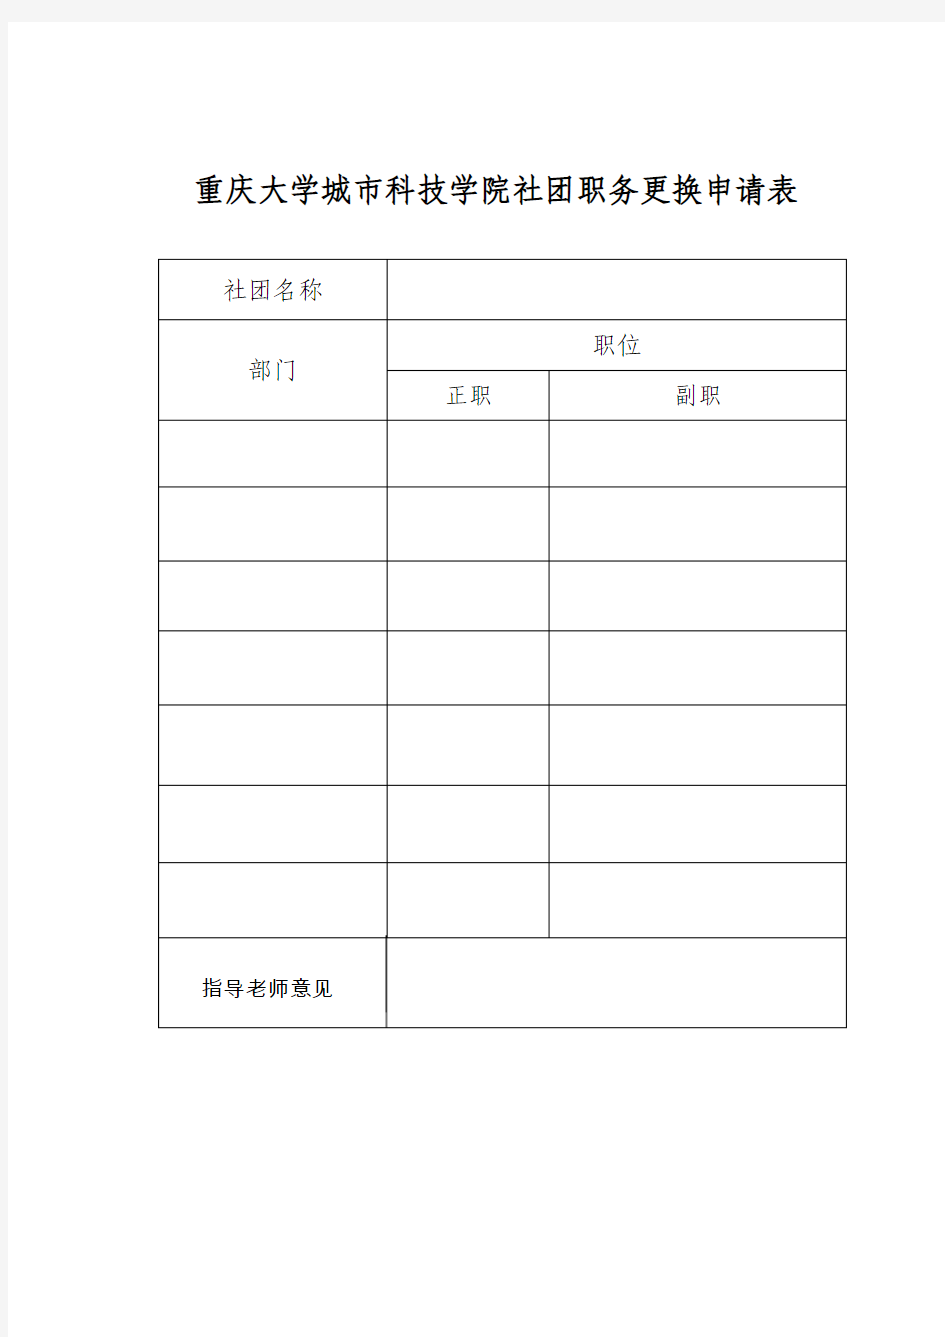 重庆大学城市科技学院社团职务更换申请表